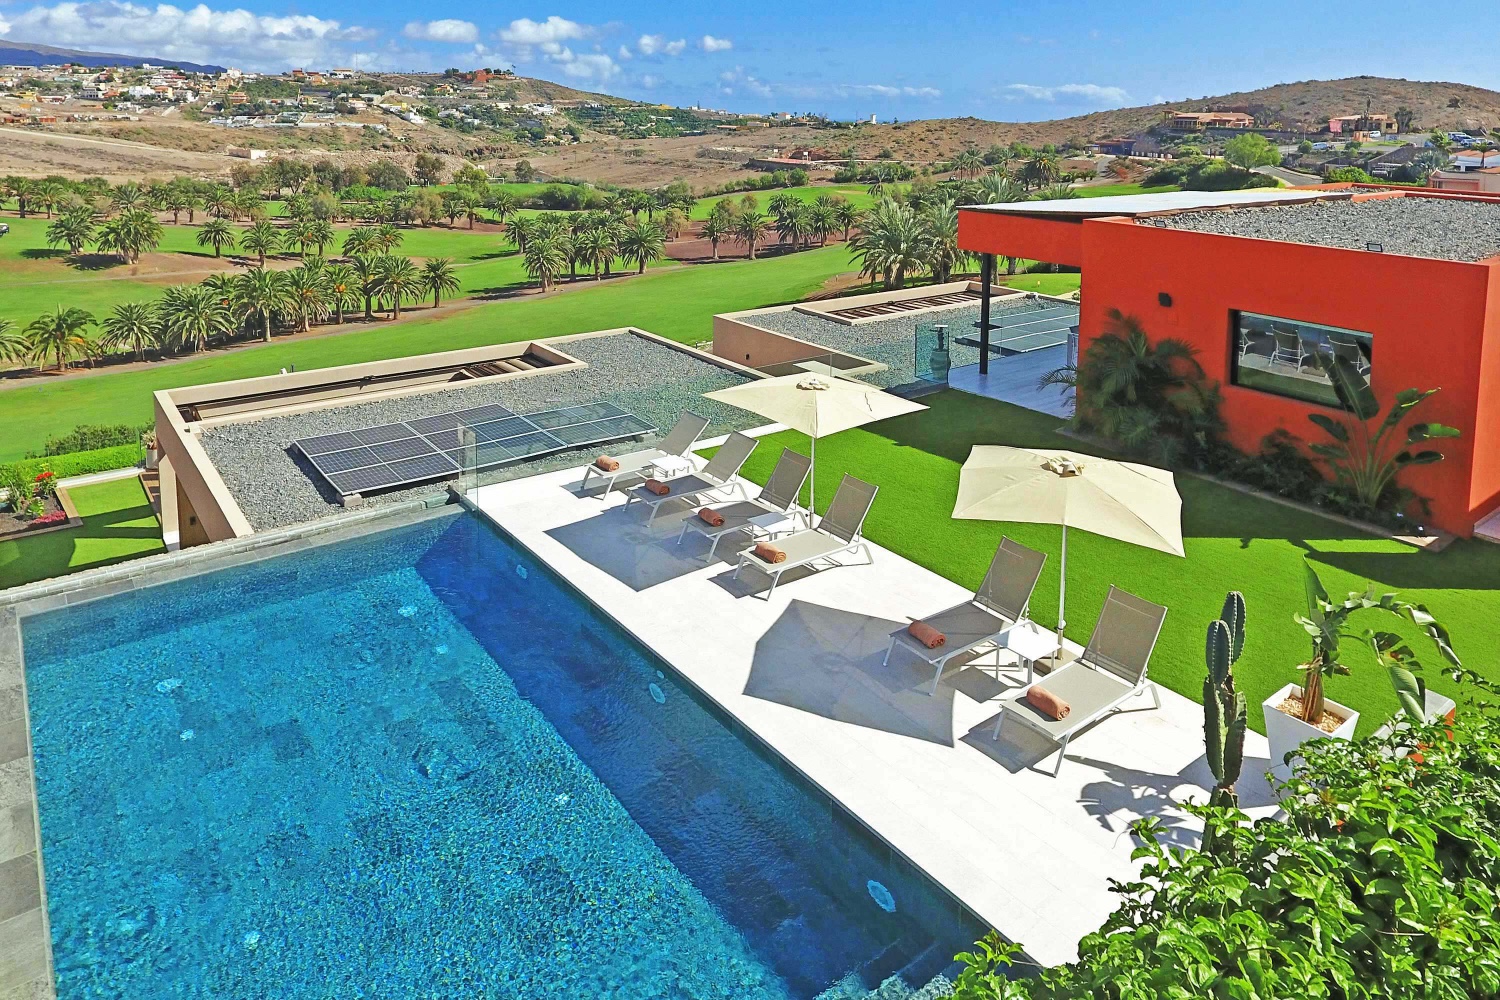 Unique et magnifique maison de plain-pied à Salobre Golf Resort, cette maison de luxe dispose de toutes les commodités pour profiter de vos vacances ensoleillées à Gran Canaria